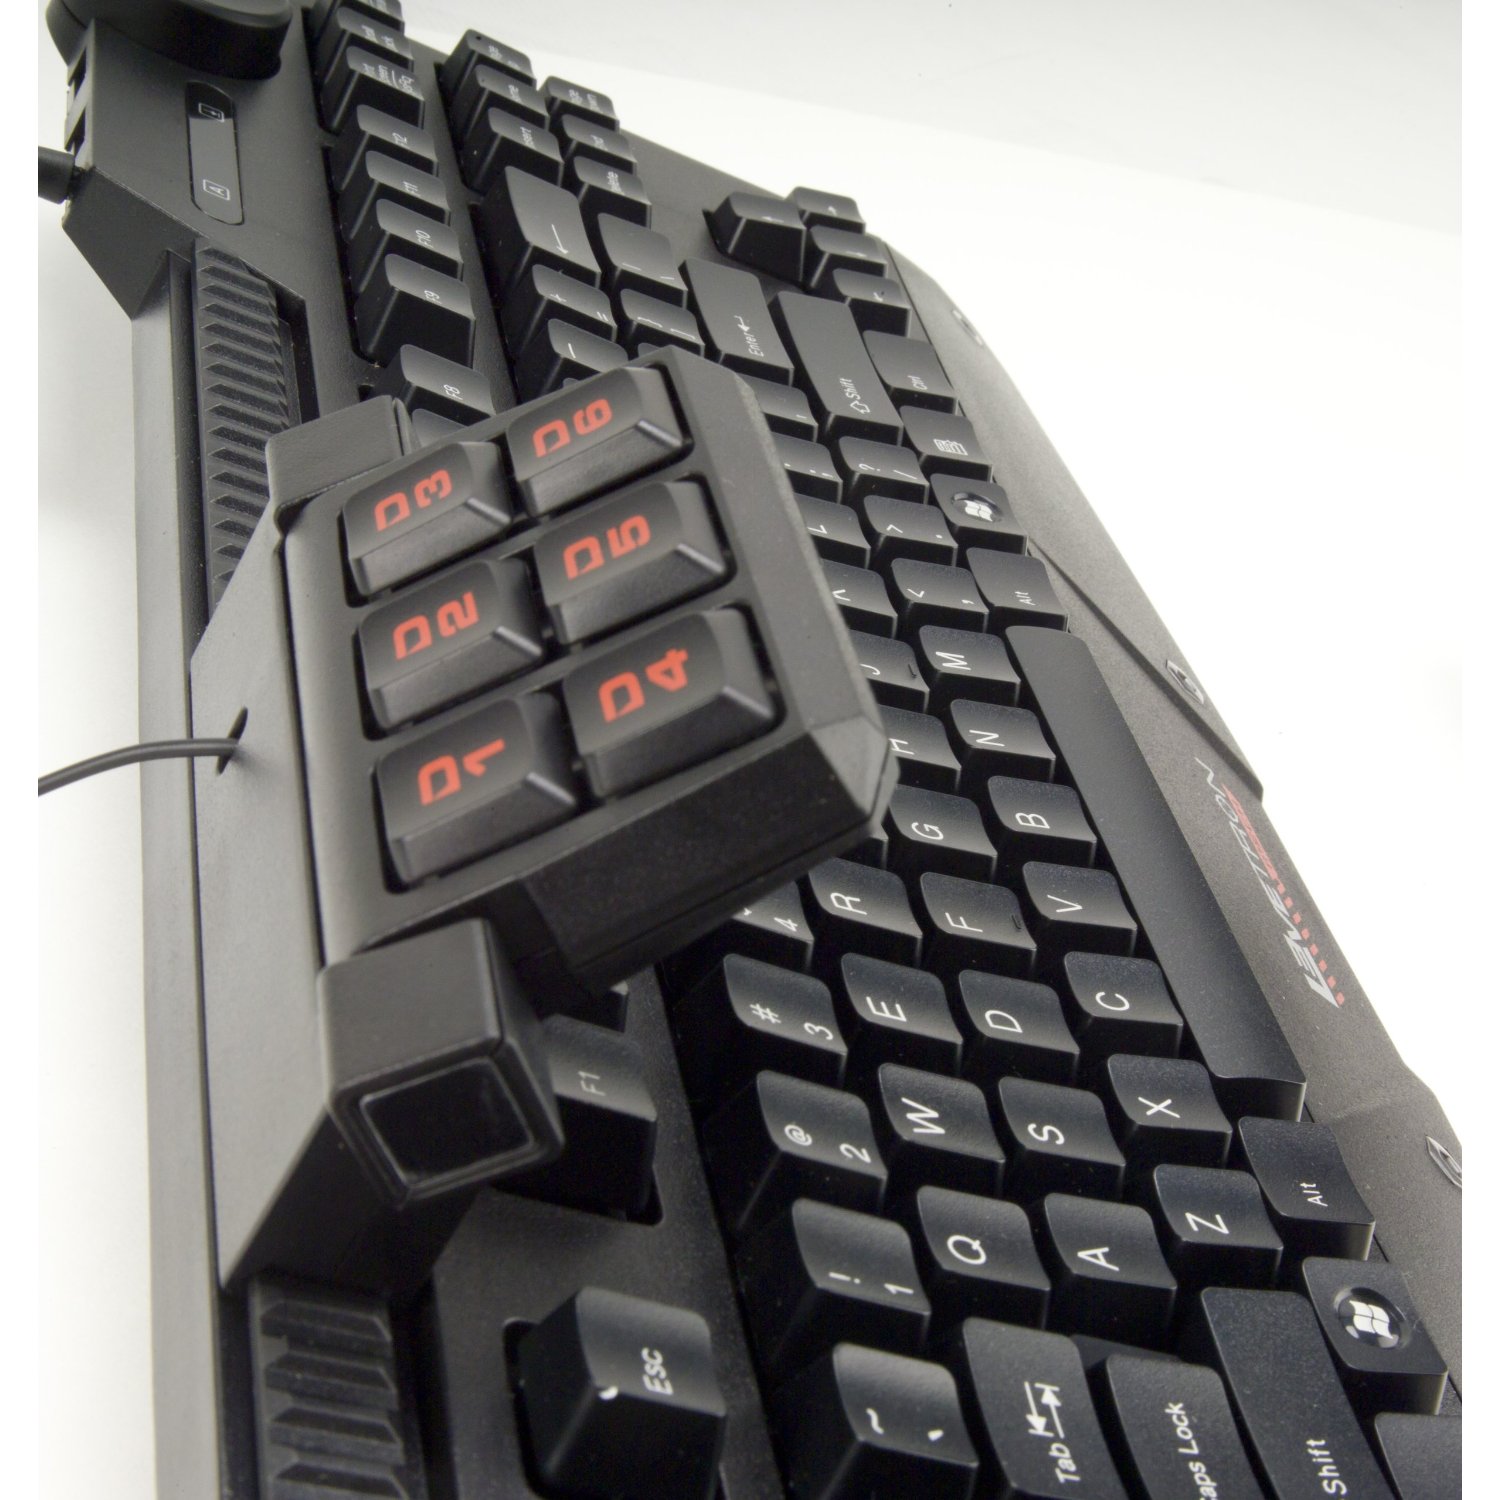 azio levetron mech5 mechanical gaming keyboard review